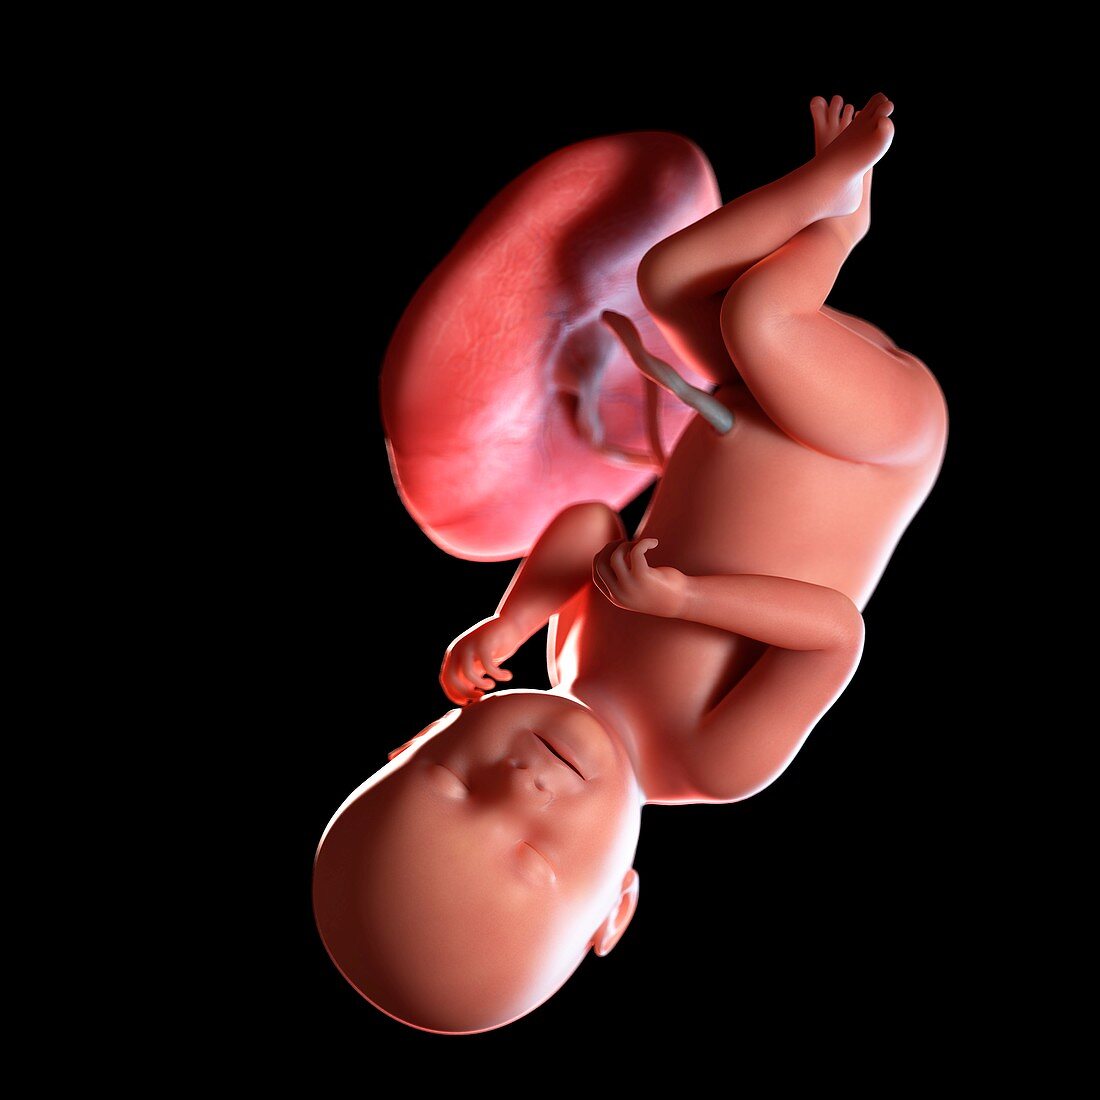 Human foetus age 38 weeks, illustration